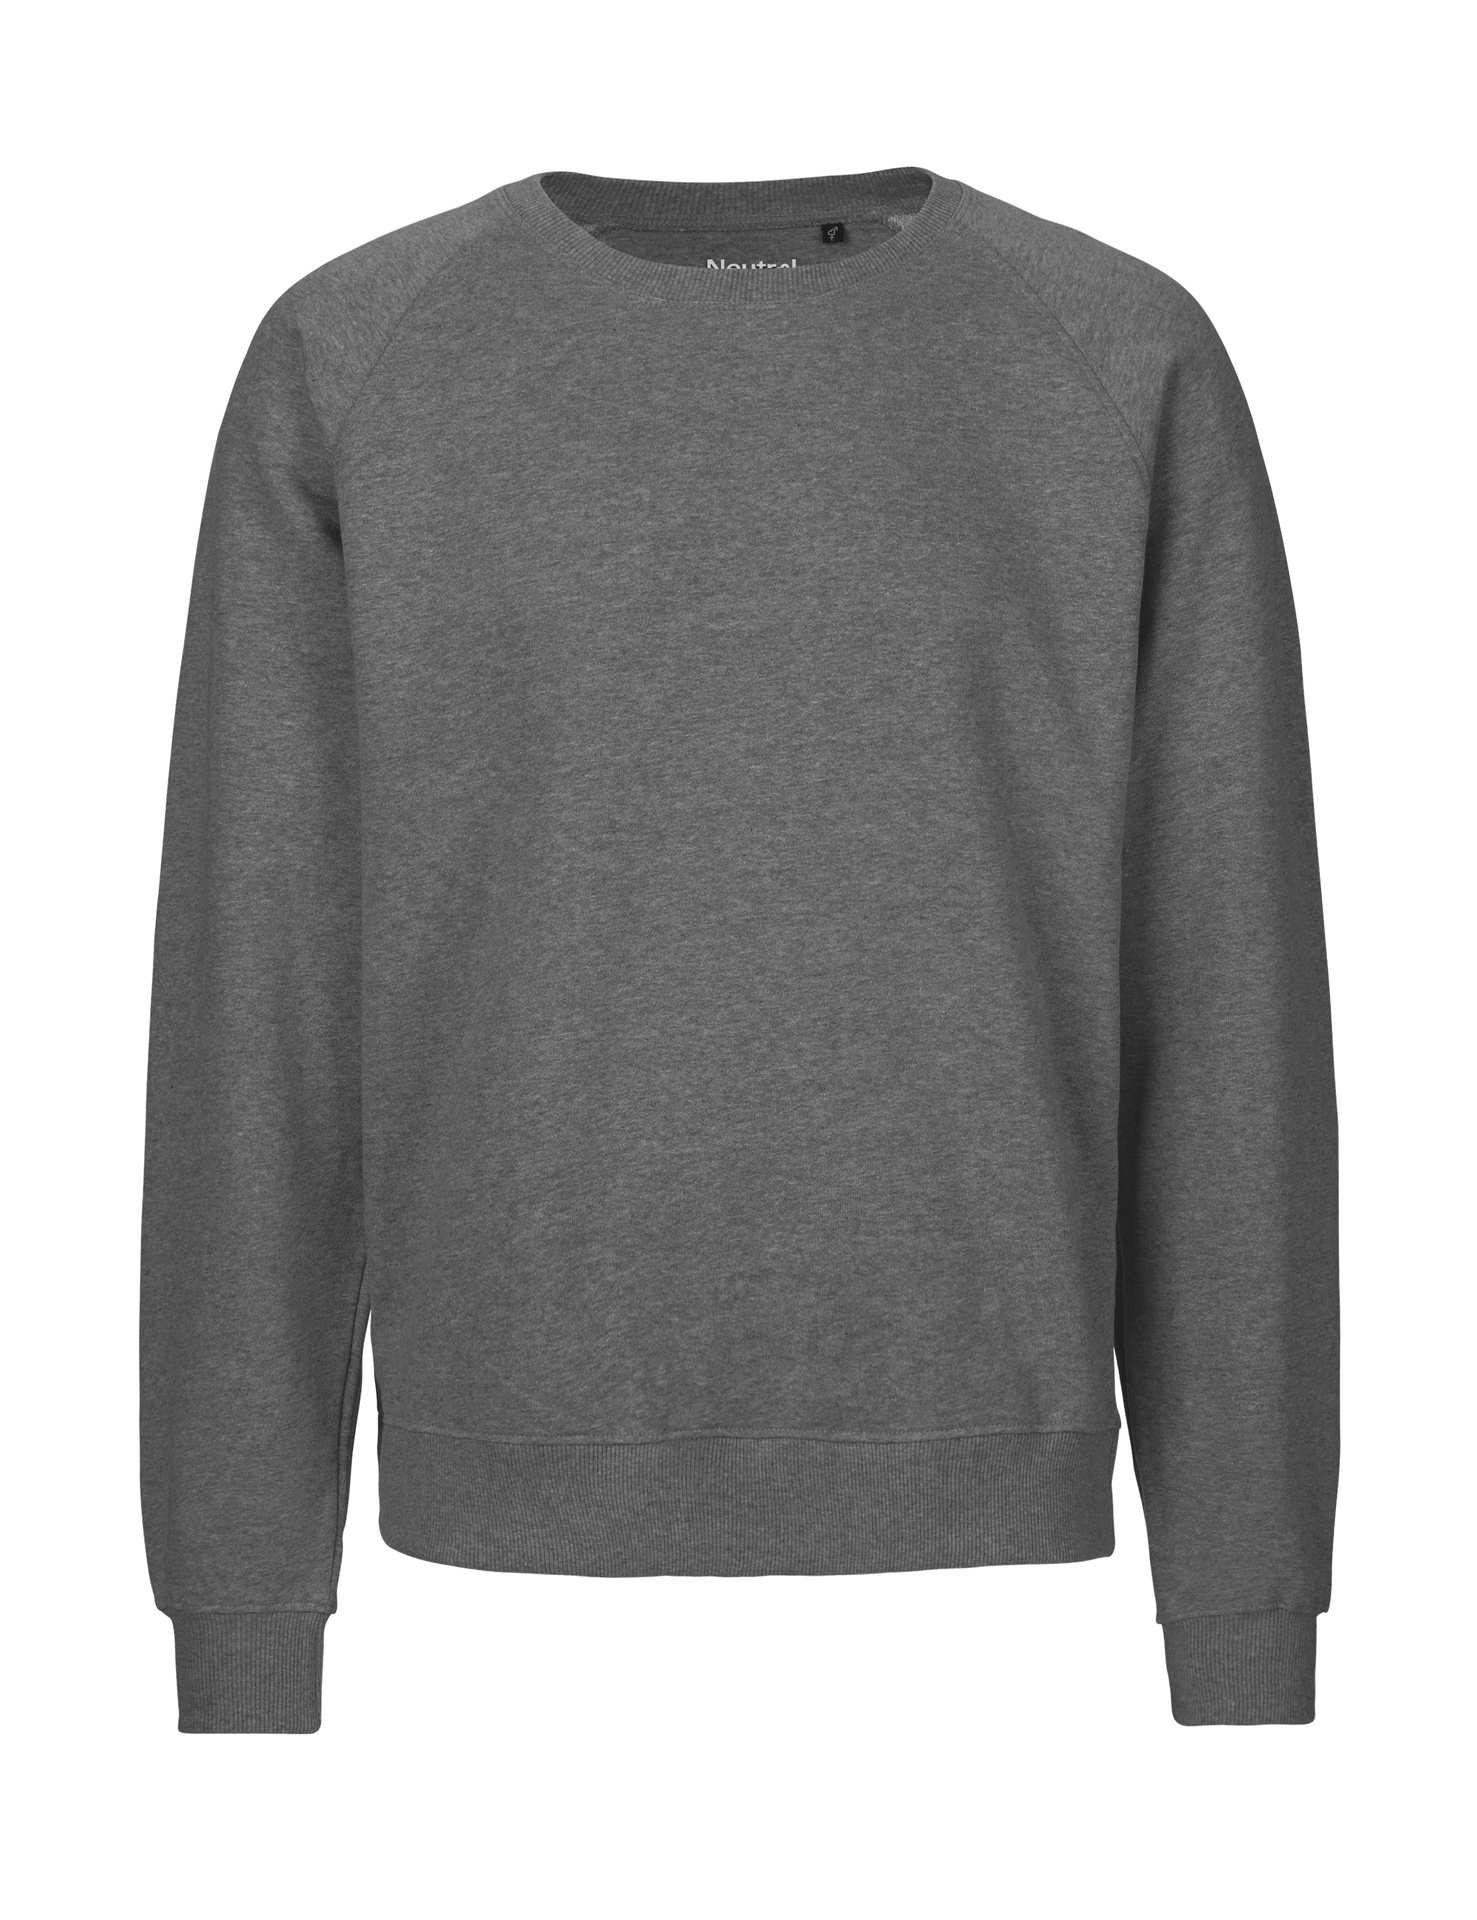 [PR/02703] Unisex Sweatshirt (Dark Heather 08, 3XL)